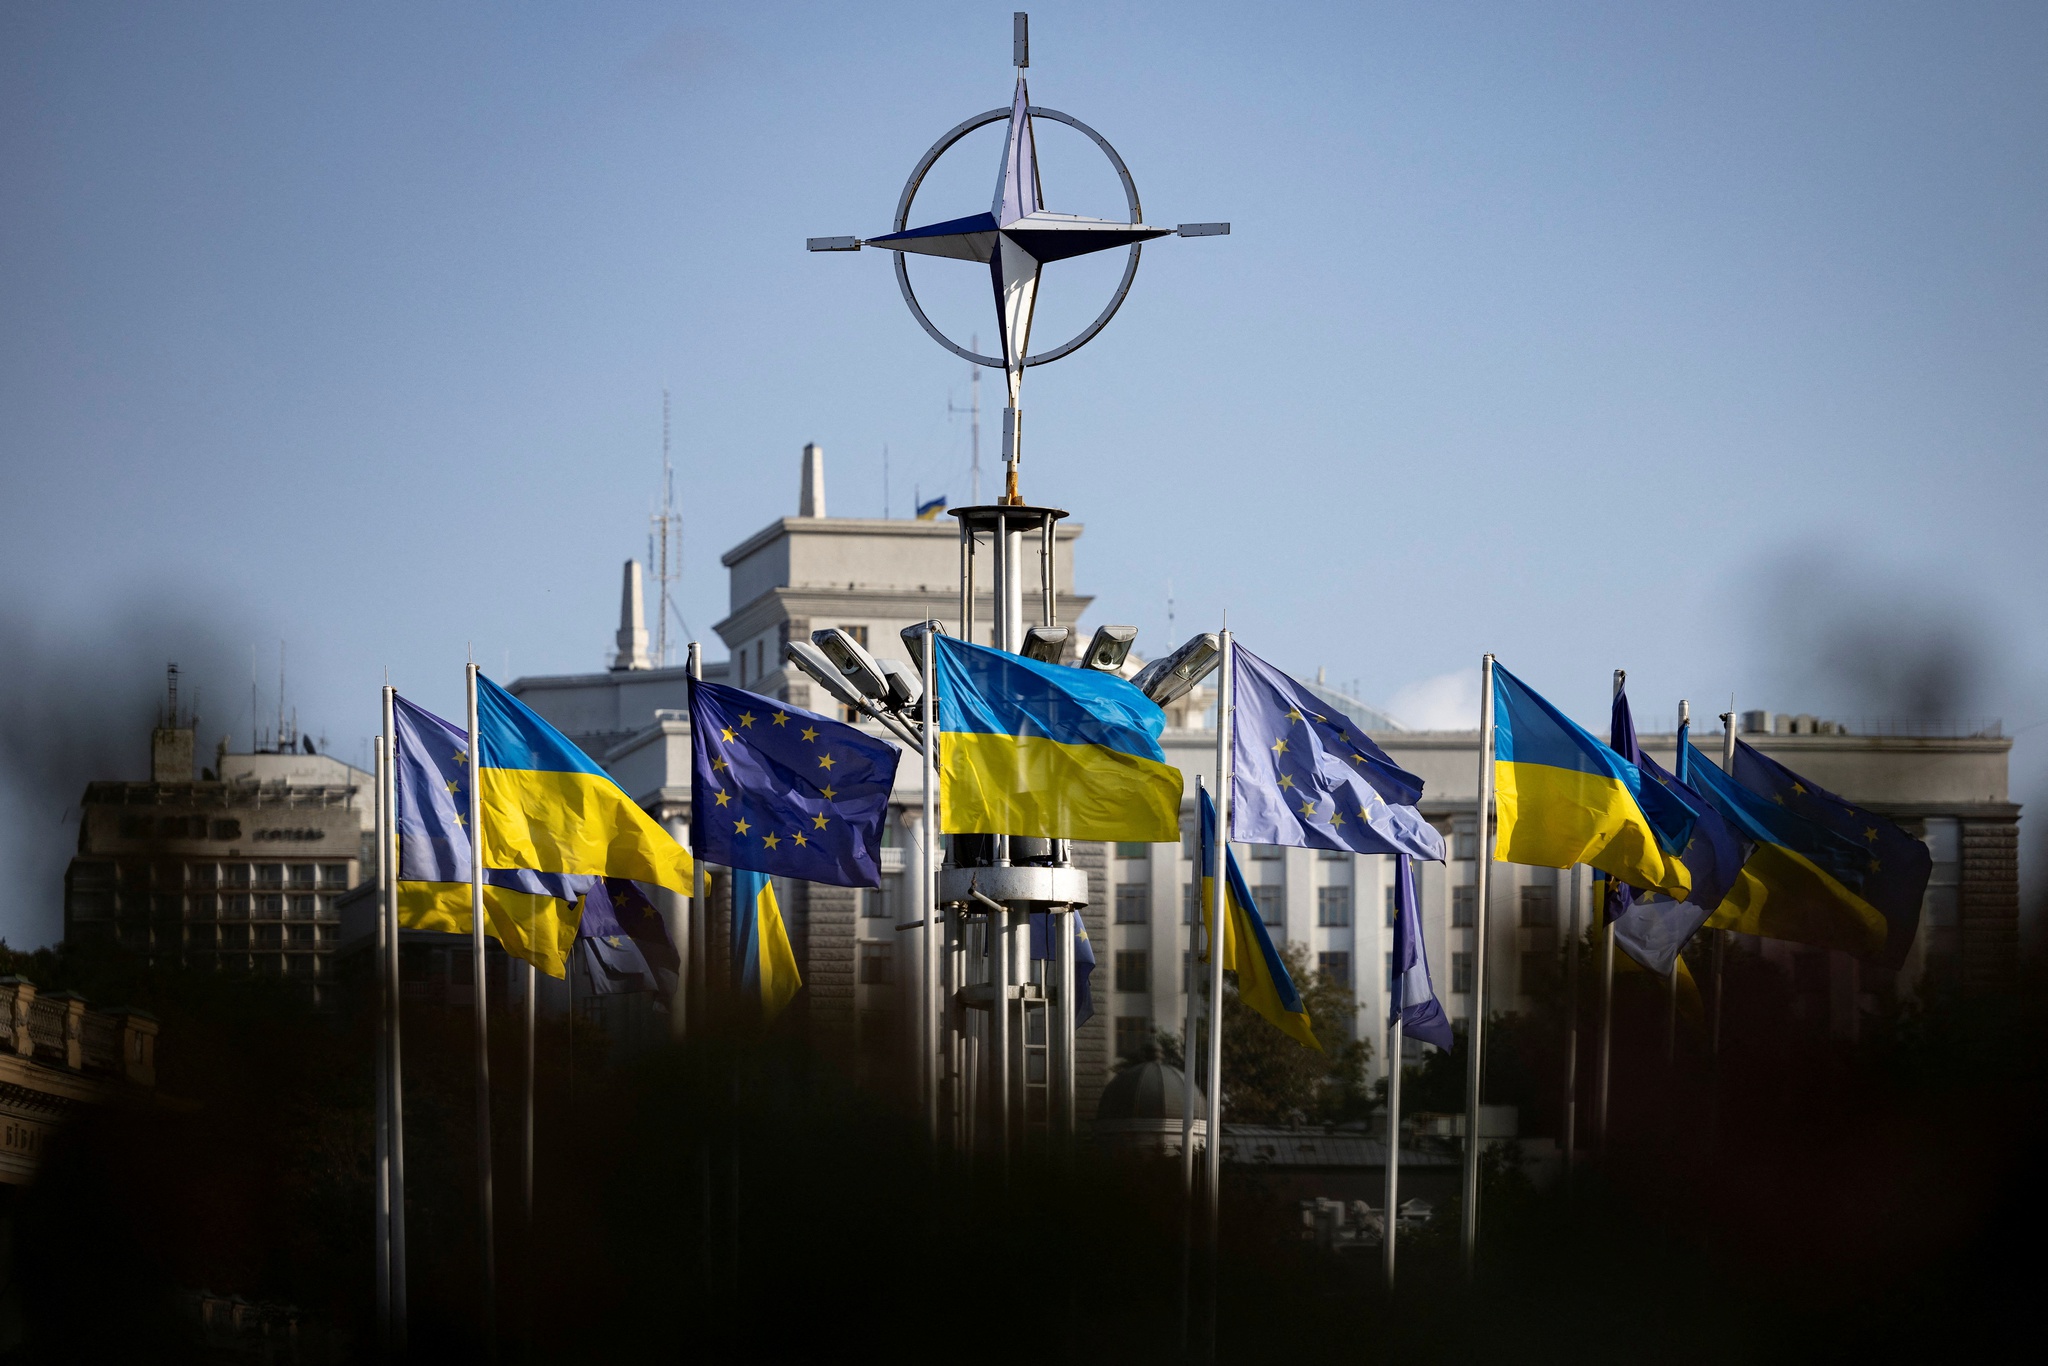 Grandes Potências do Xadrez: Ucrânia